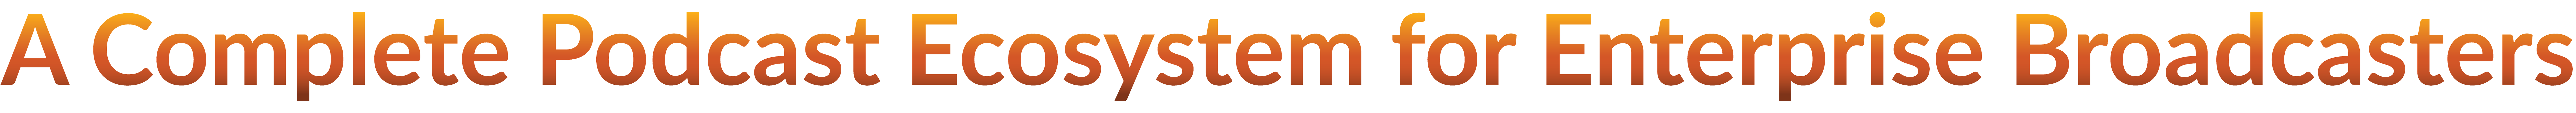 Podcast Ecosystem logo